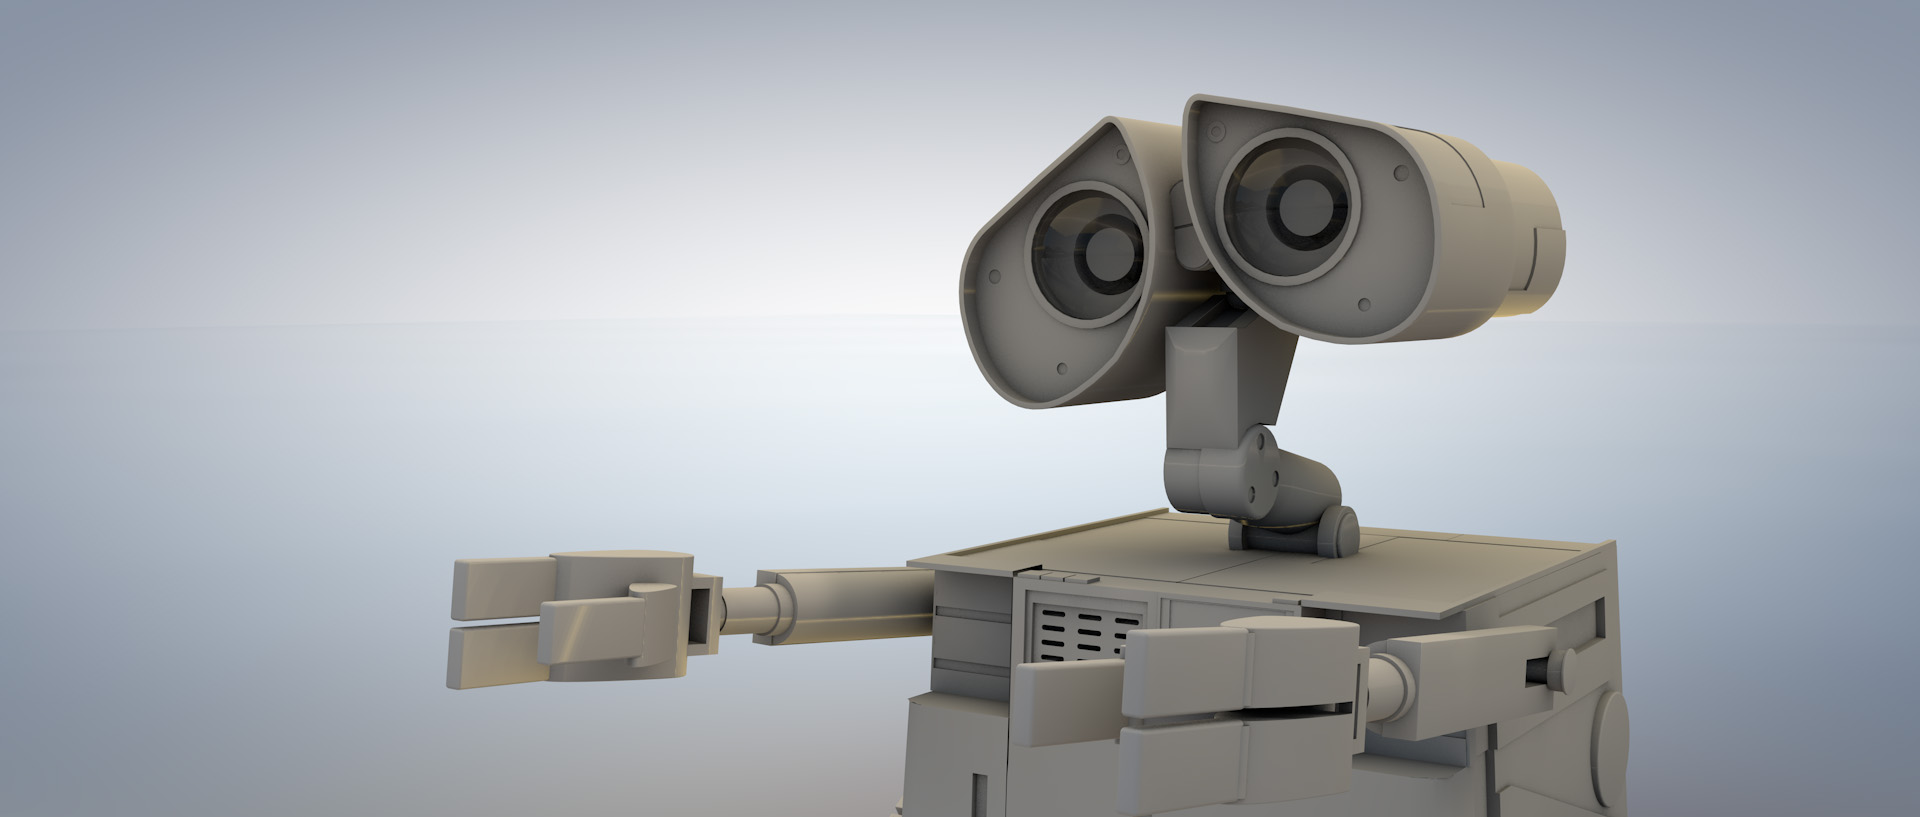 Wall-E Model